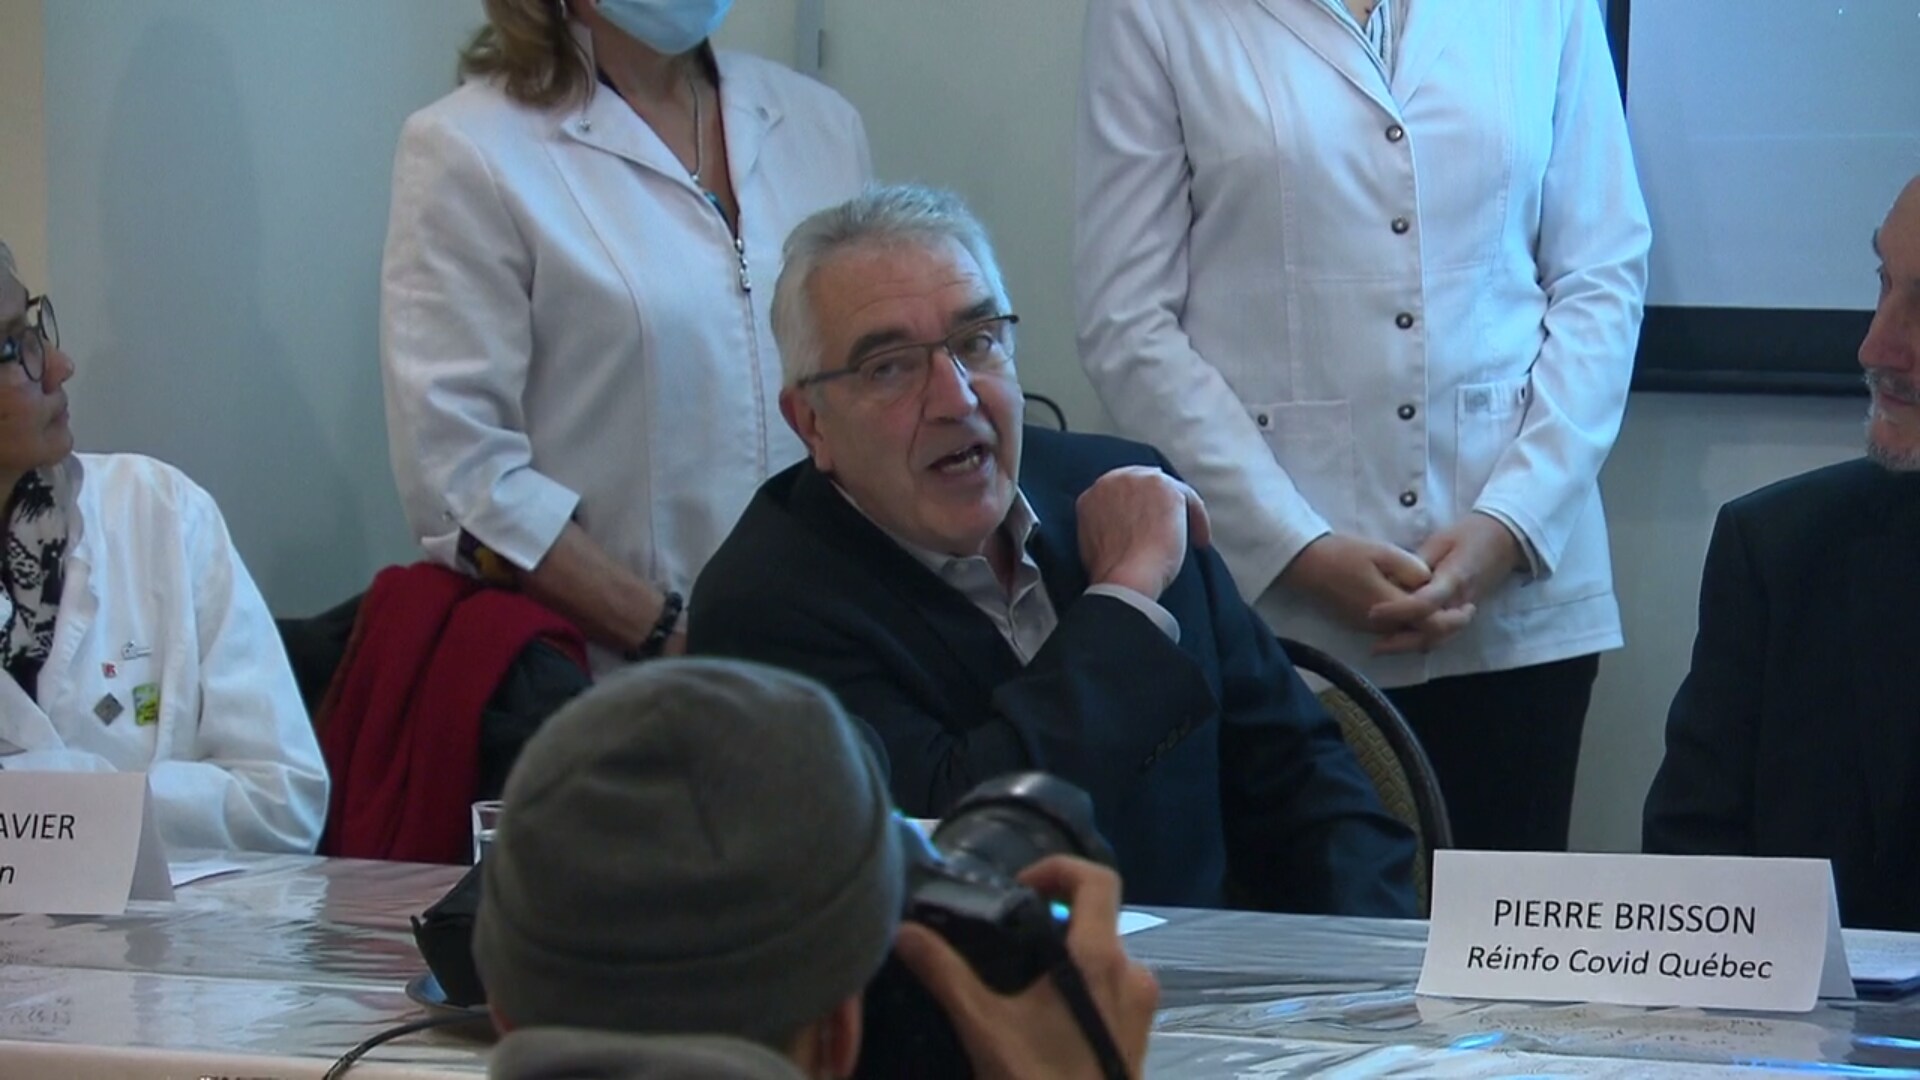 Le Dr Alain Roux s'adresse au public lors d'une conférence de presse. Il porte un veston et une chemise.